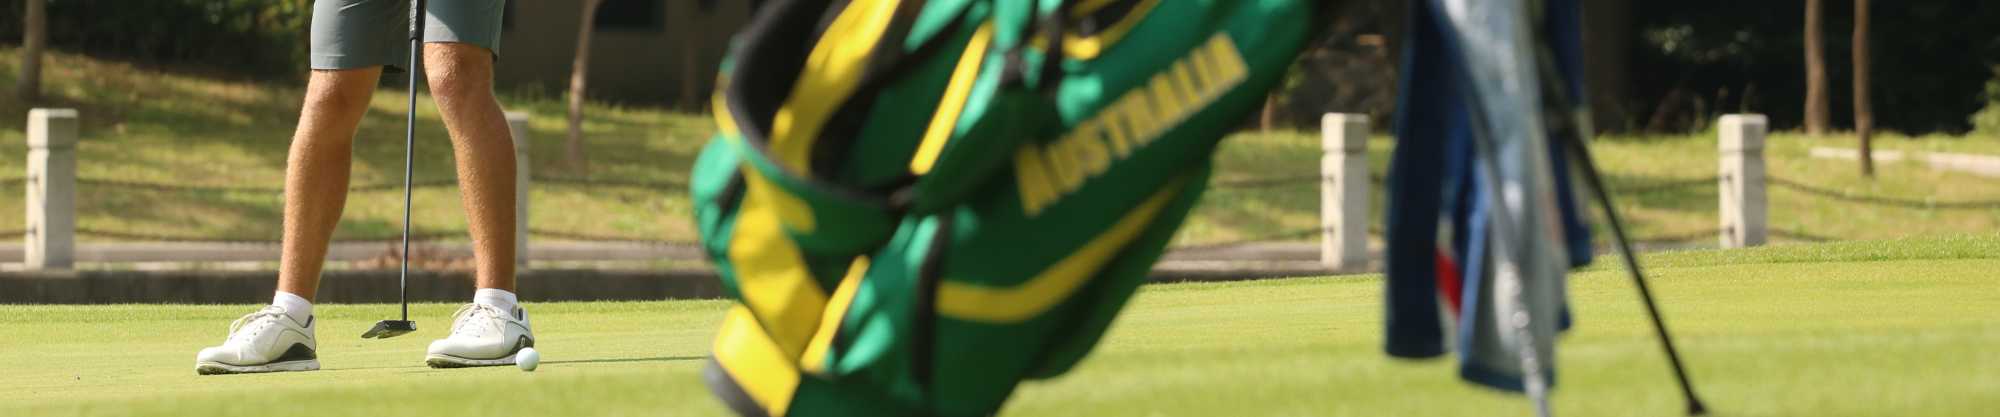 Blake Windred Australian golf bag